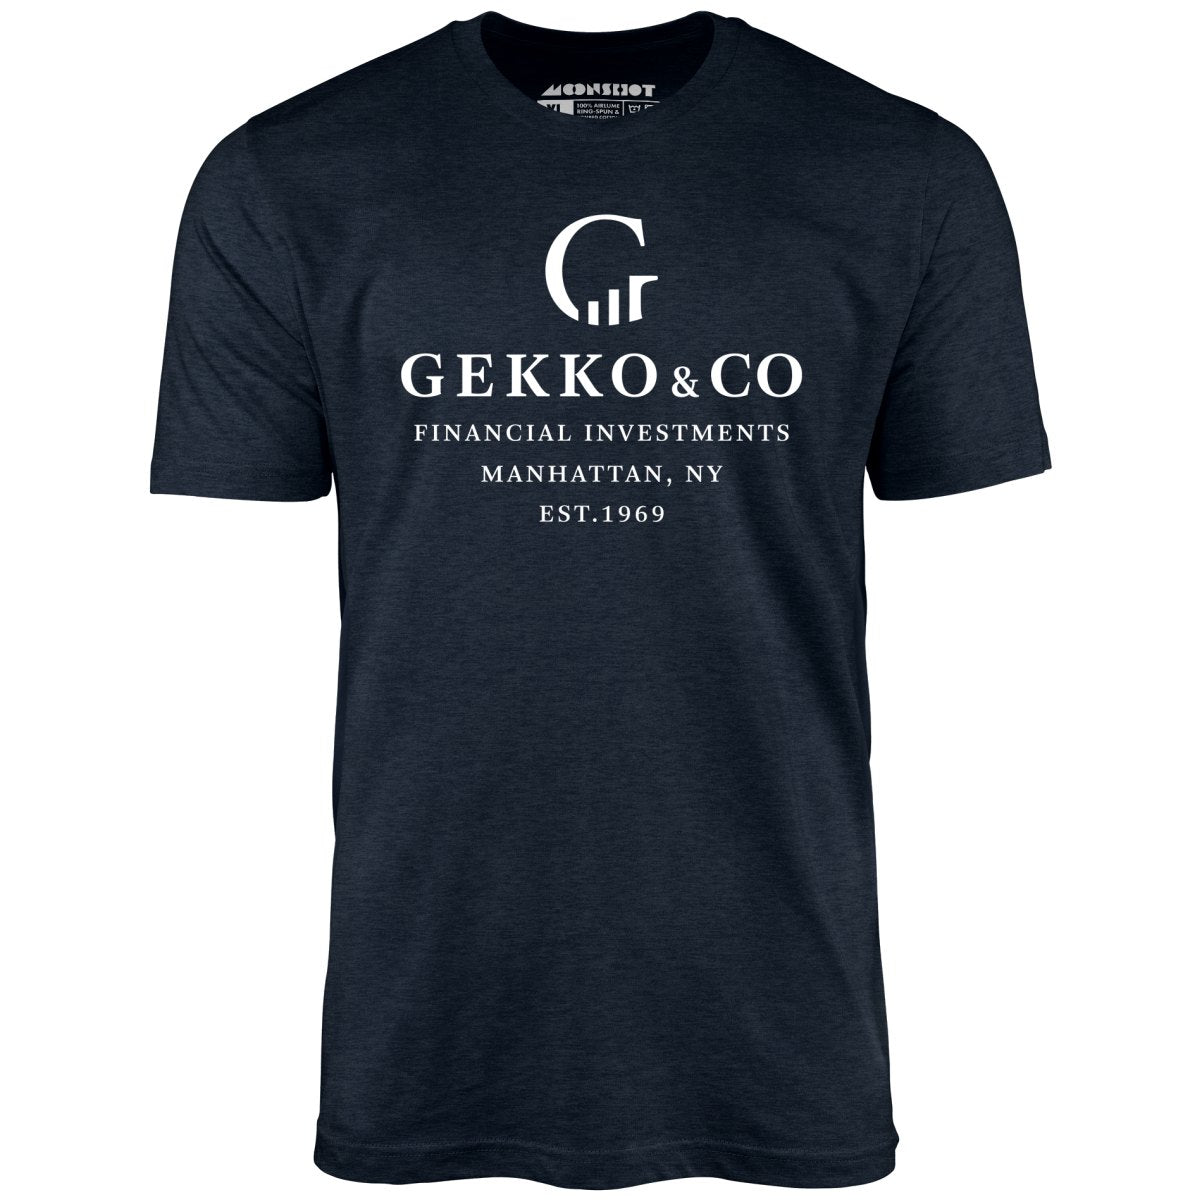 Gekko & Co. Financial Investments - Wall Street - Unisex T-Shirt